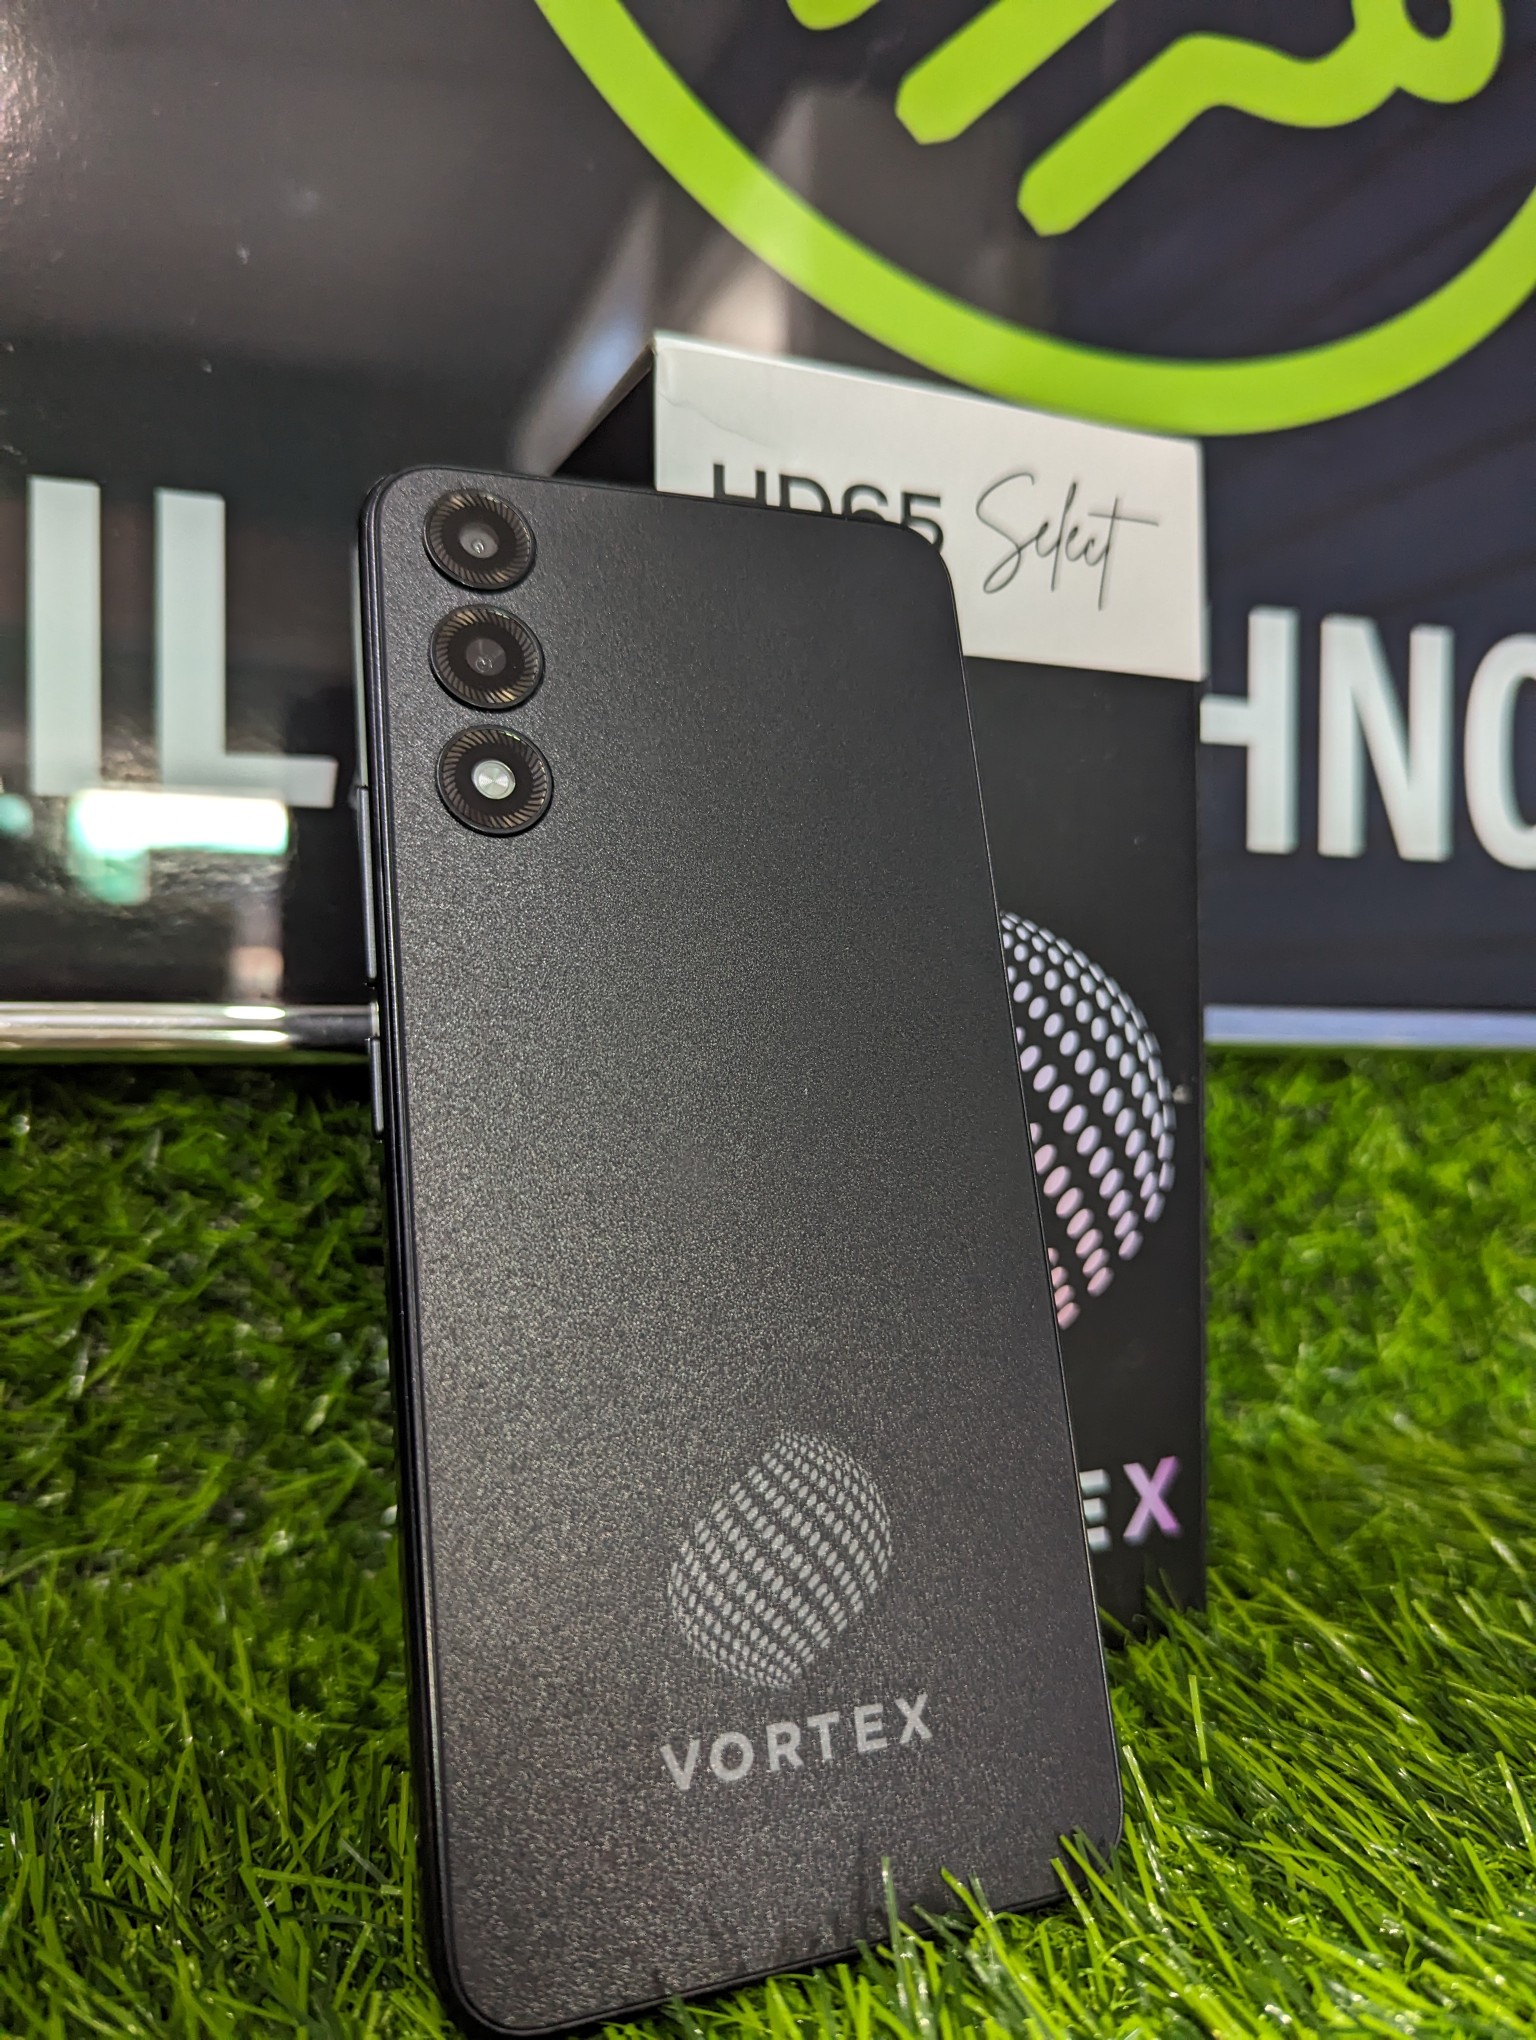 celulares y tabletas - Celulares nuevos Vortex  5